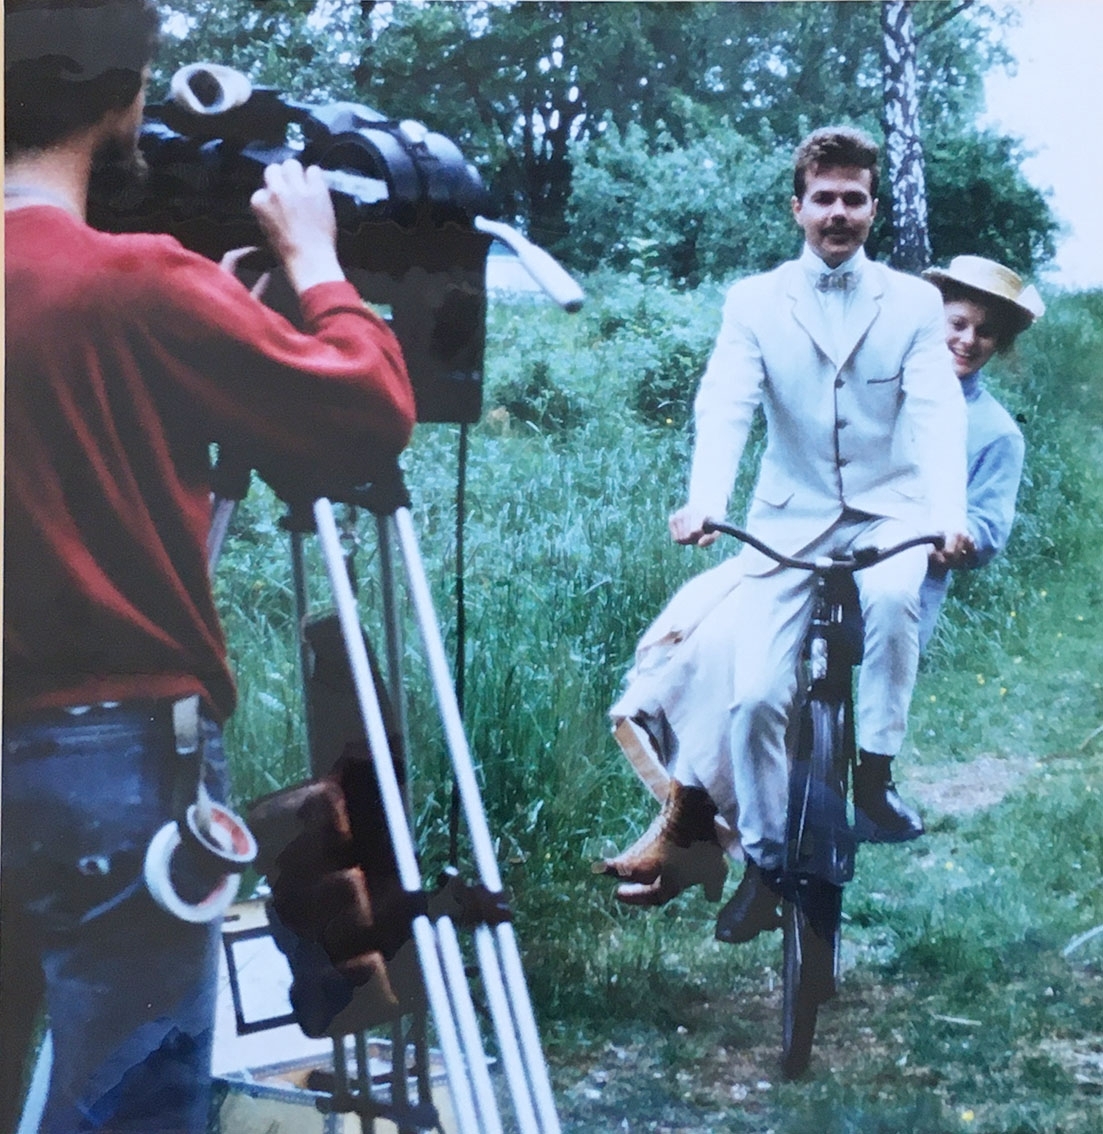 En man i ljus kostym på en cykel med en kvinna i hatt och ljus kappa på pakethållaren, de skrattar. De cyklar mot en man med filmkamera på stativ som filmar dem.